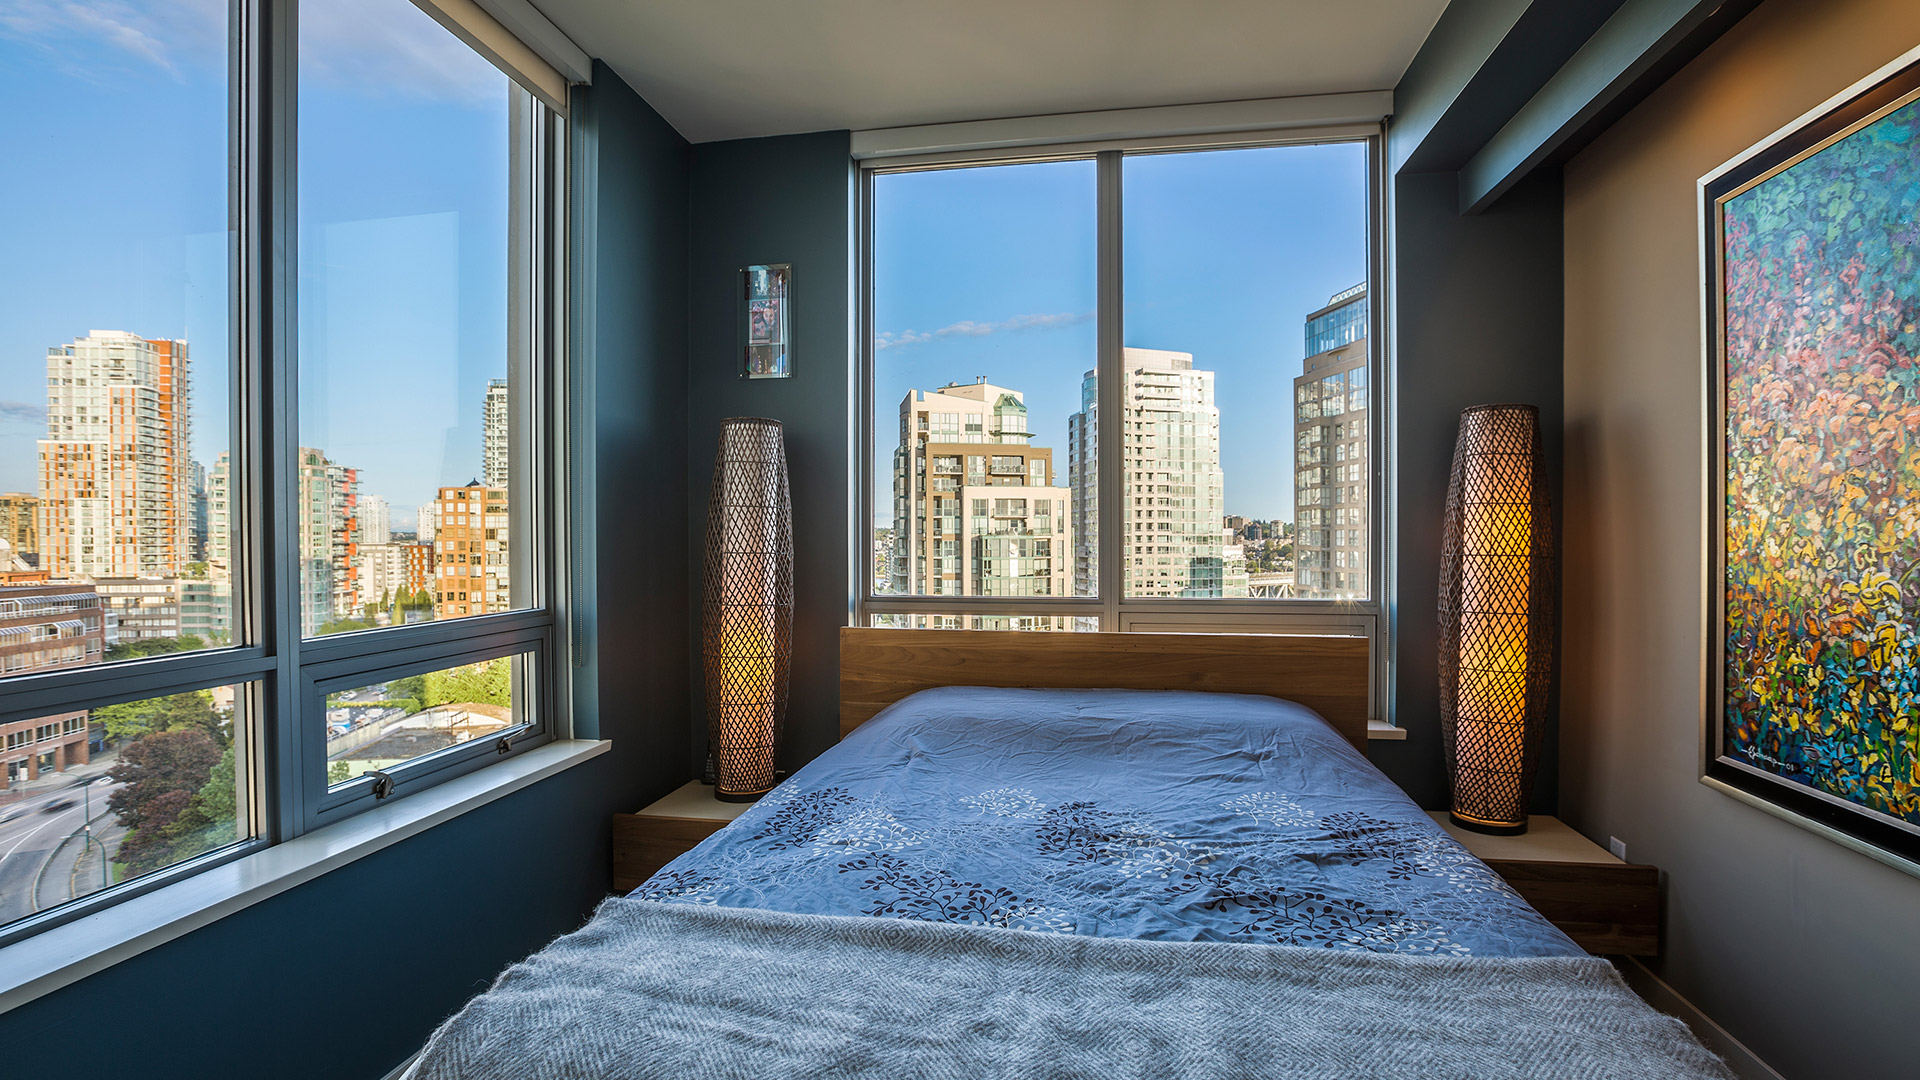 Furnished Vancouver Rental Bedroom